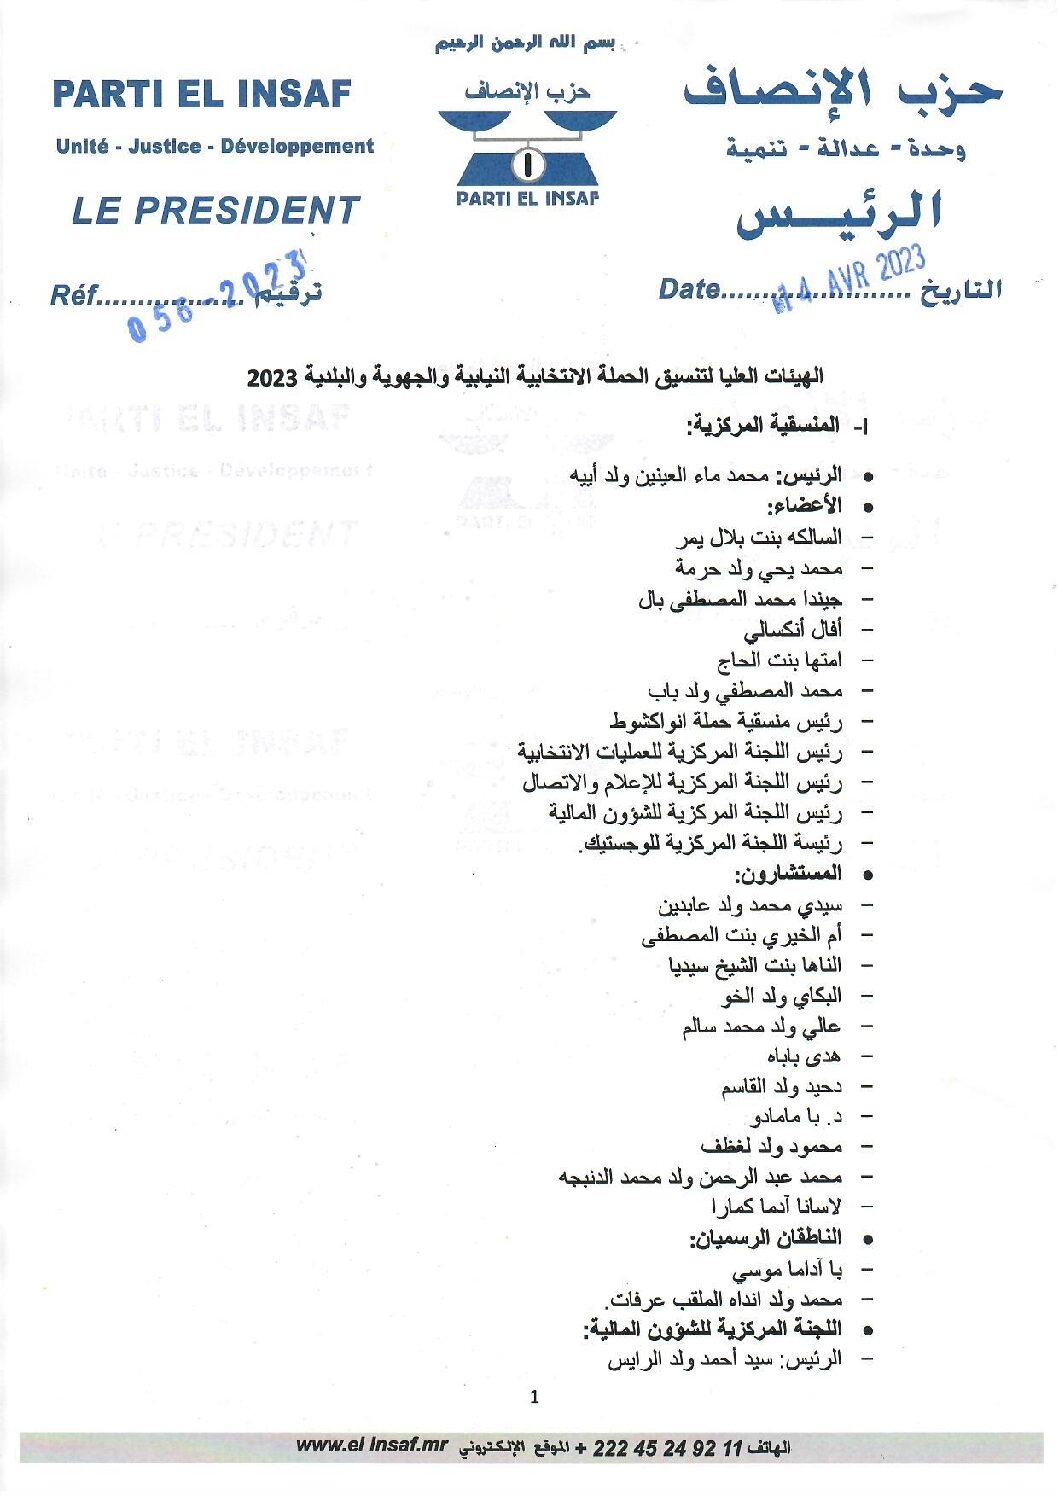 صورة تعيين الهيئات العليا ومنسقية نواكشوط للحملة الانتخابية 2023